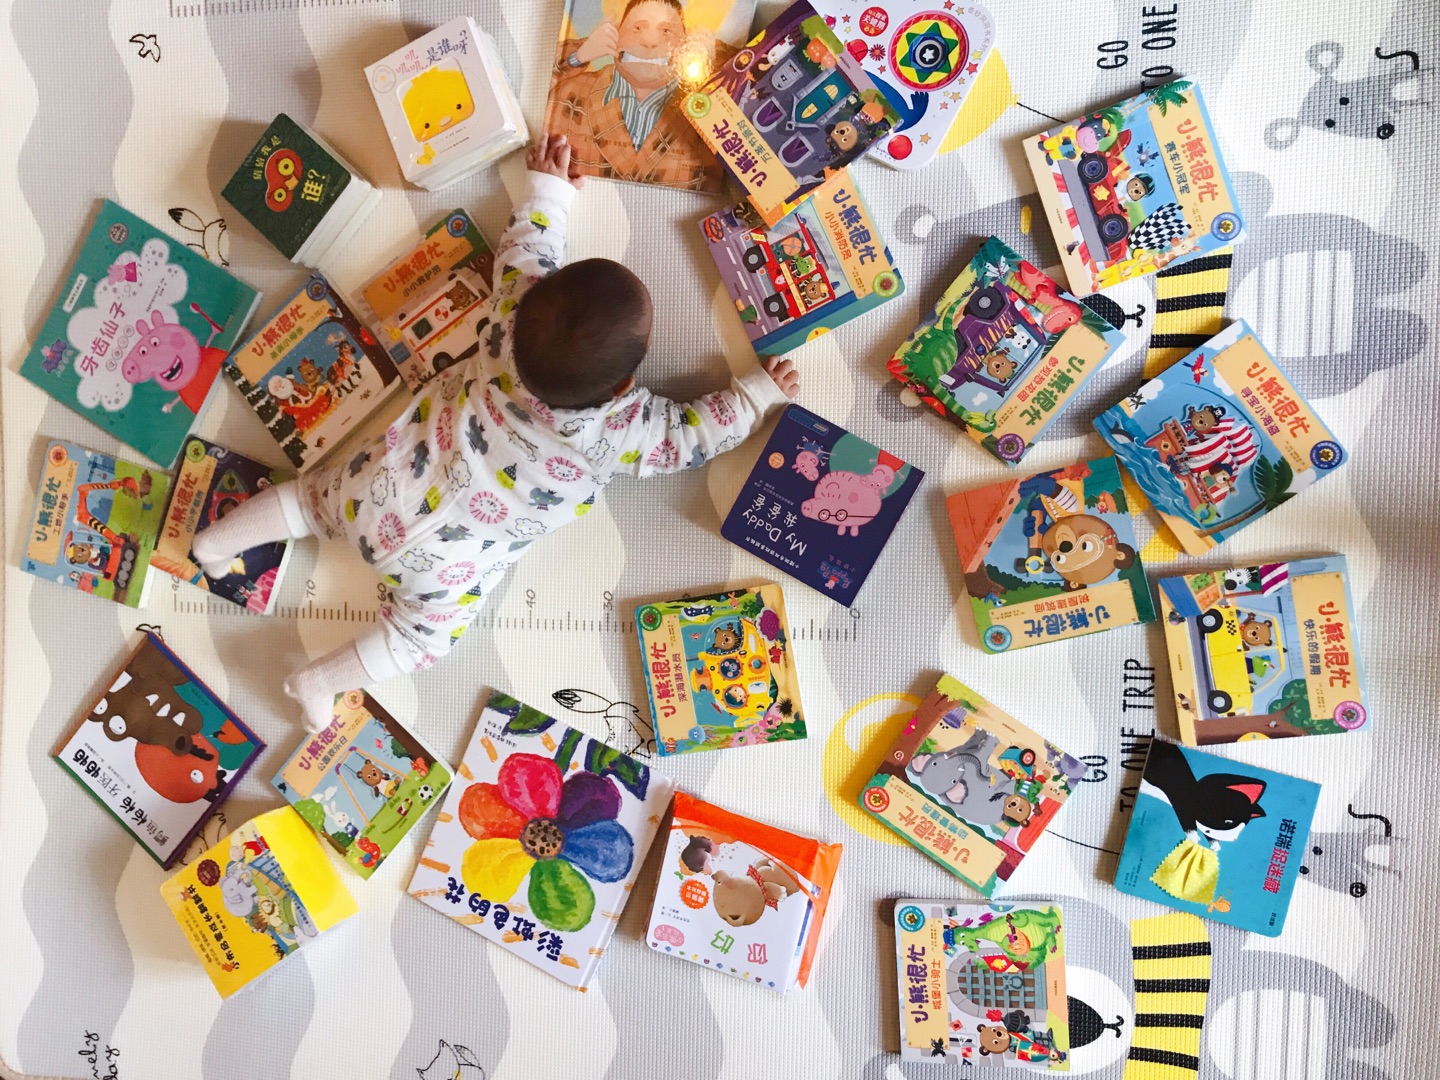 读书日还是很划算，100-50叠加400-100下来100块可以买400的书，给宝宝买了很多。